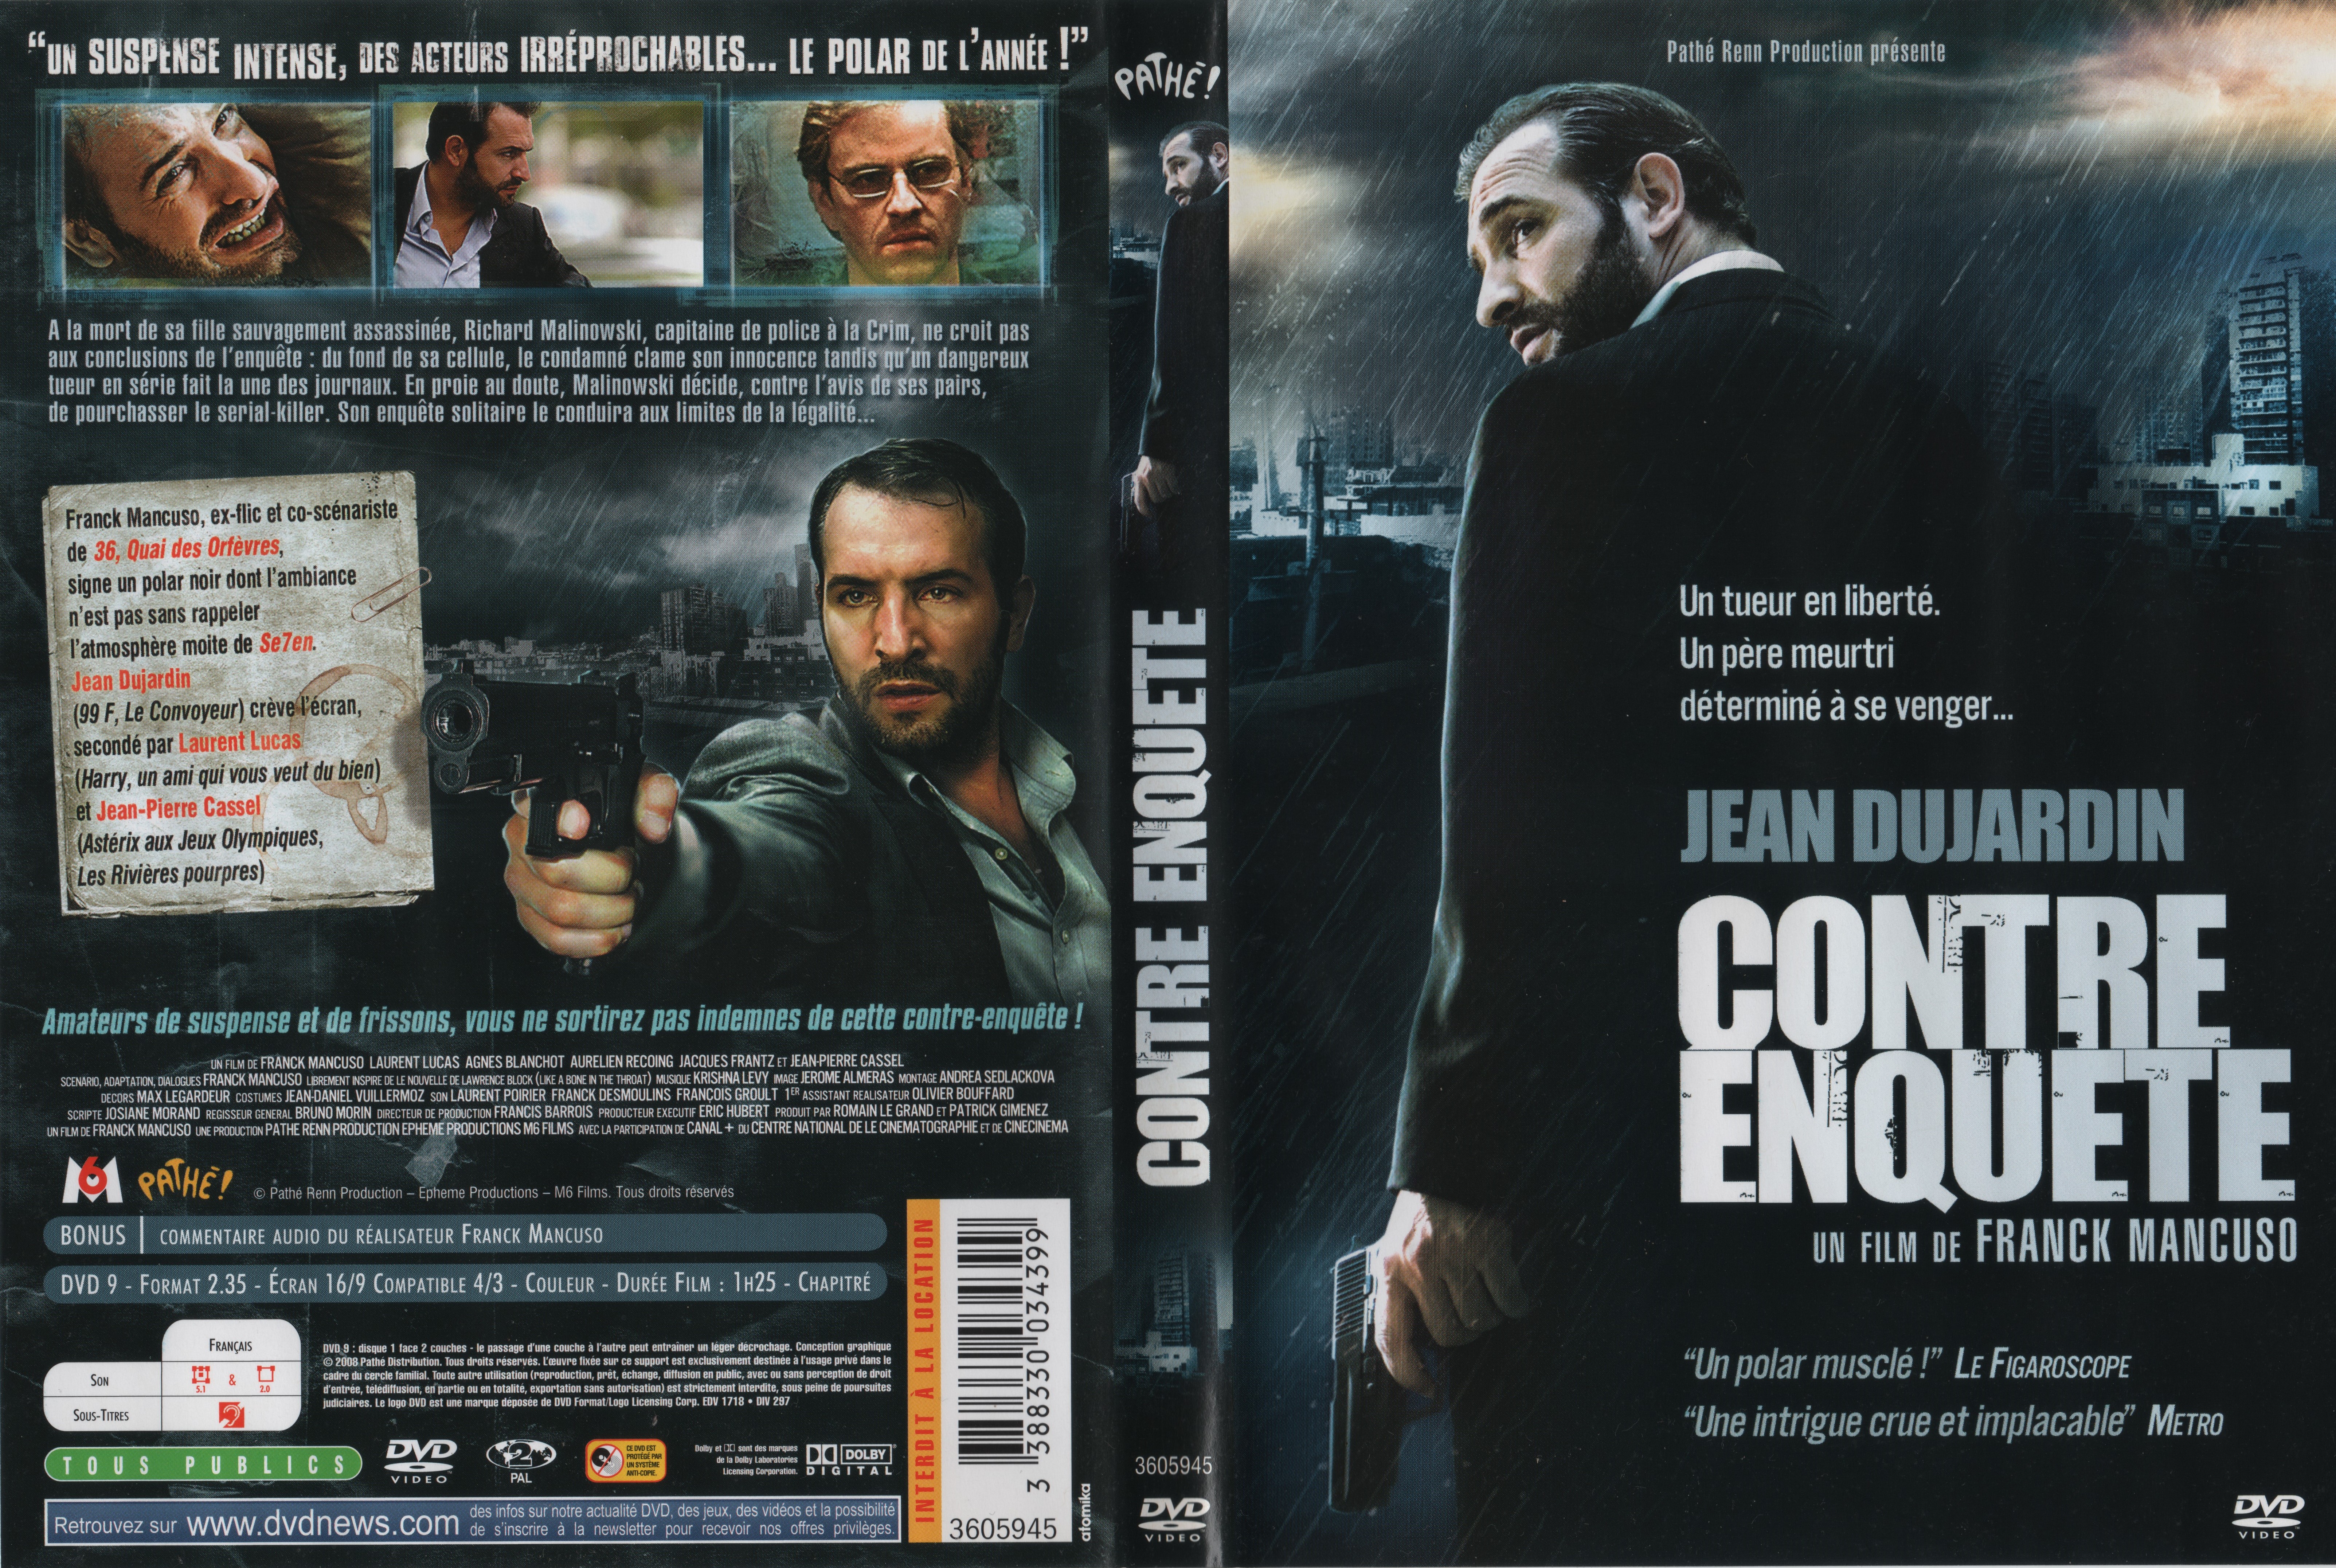 Jaquette DVD Contre Enquete v3